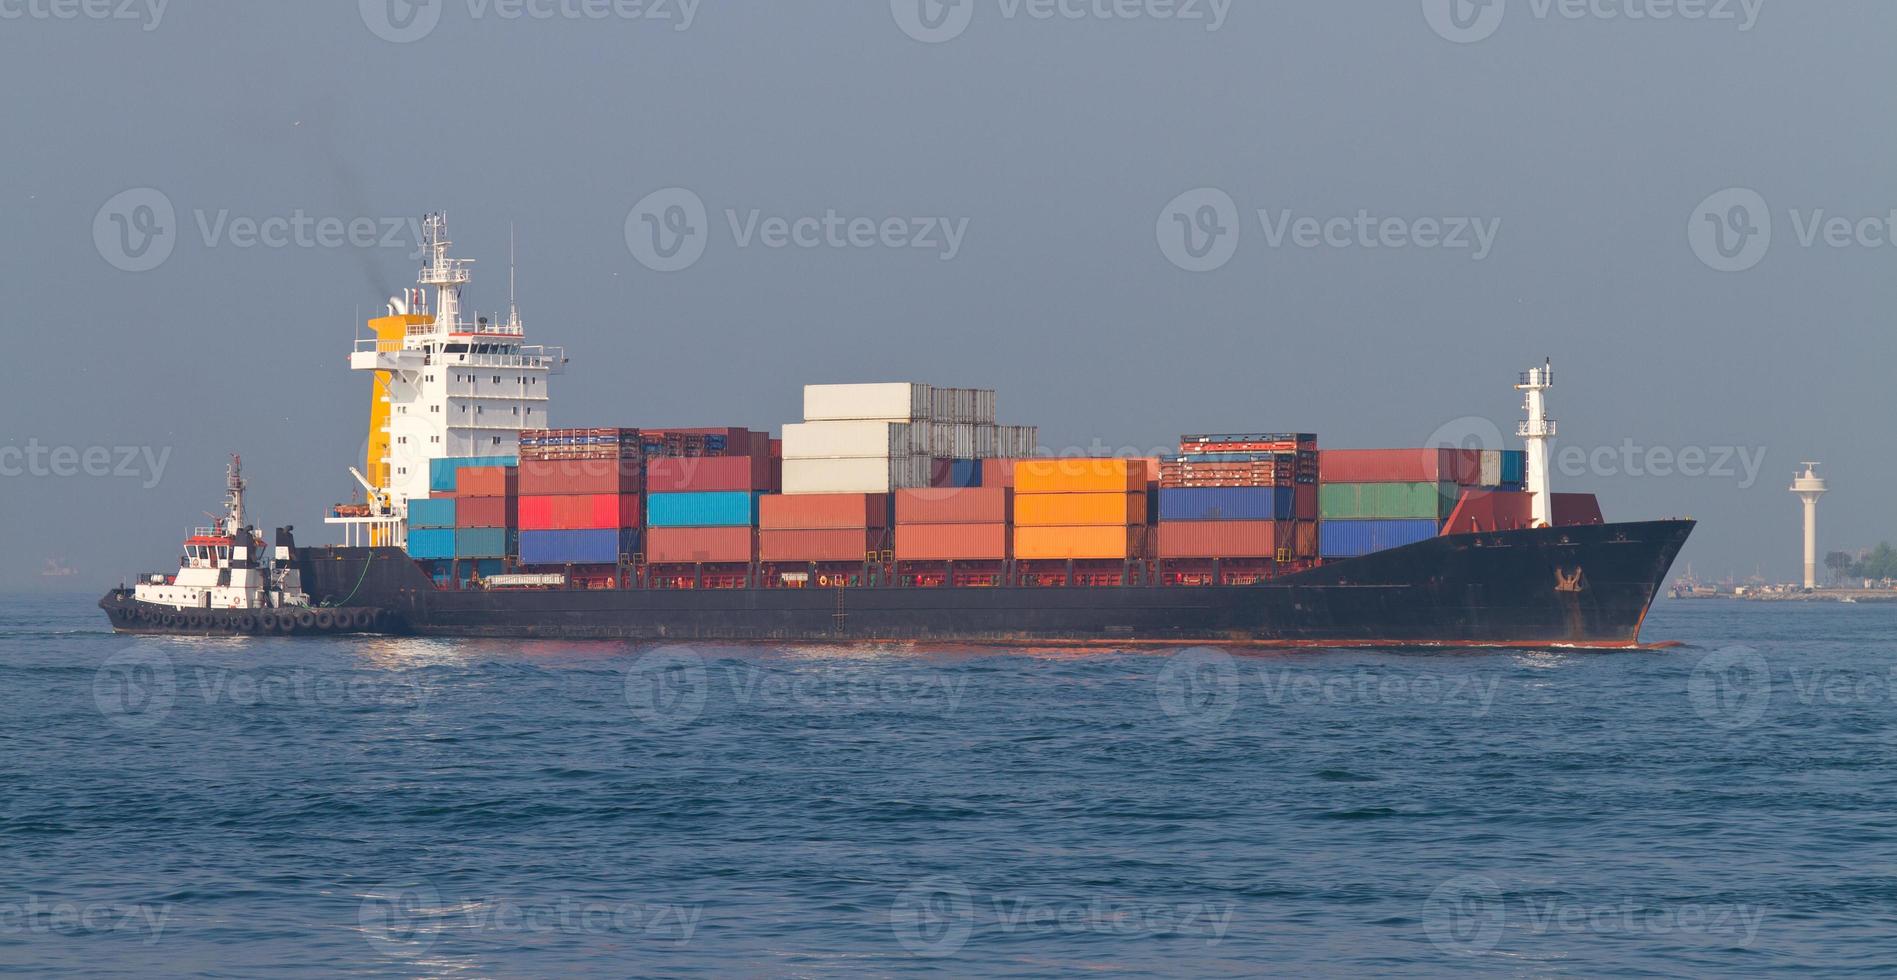 containerschip in zee foto